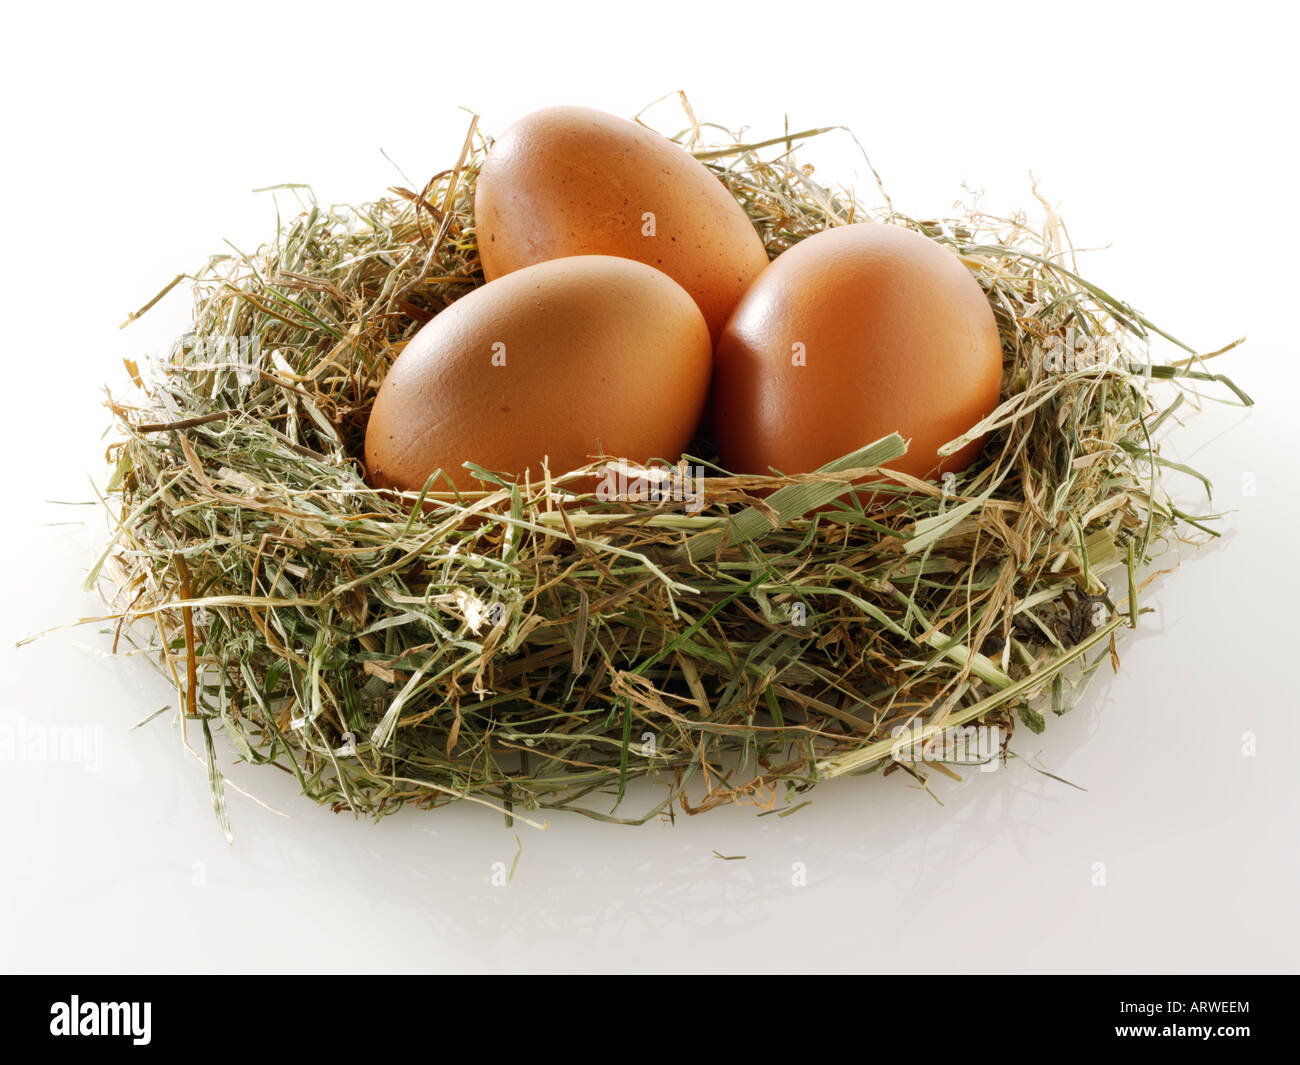 Burford huevos de gallina marrón sobre un fondo blanco. Foto de stock